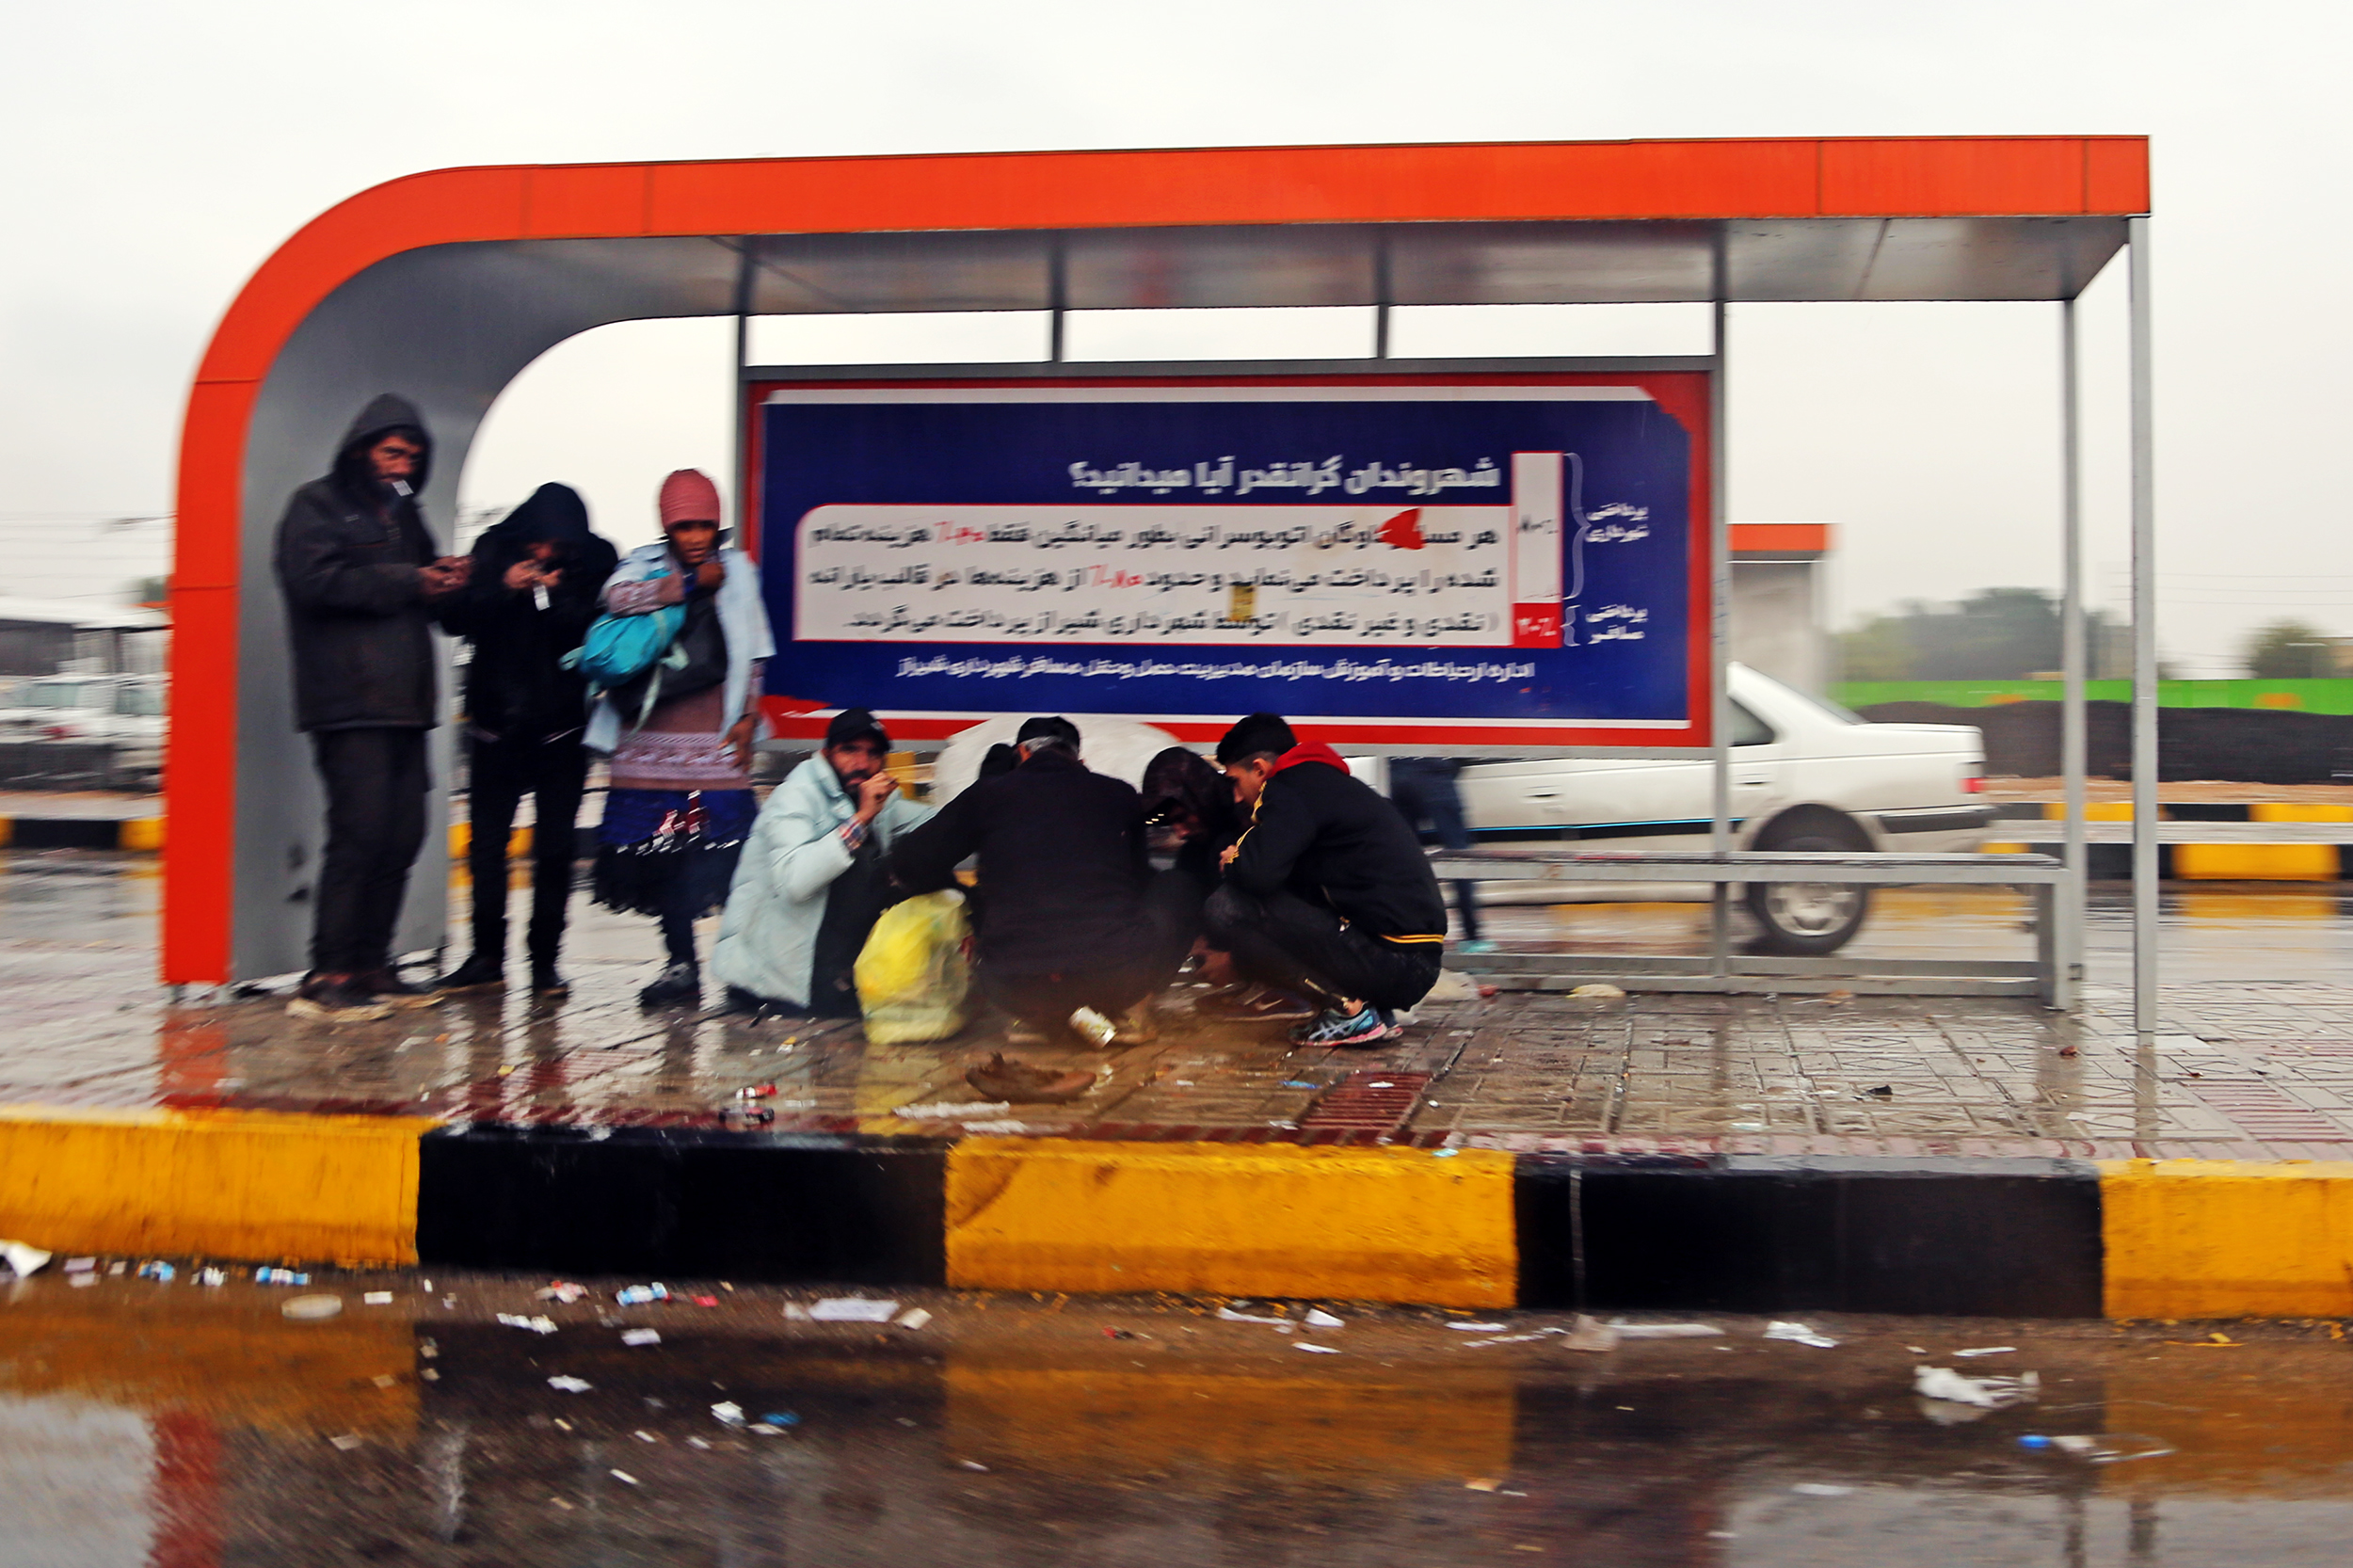 ایستگاه اتوبوس به جای گرمخانه ها؛ پناهگاه بی خانمان ها زیر باران! – عکاس: عباس امیری